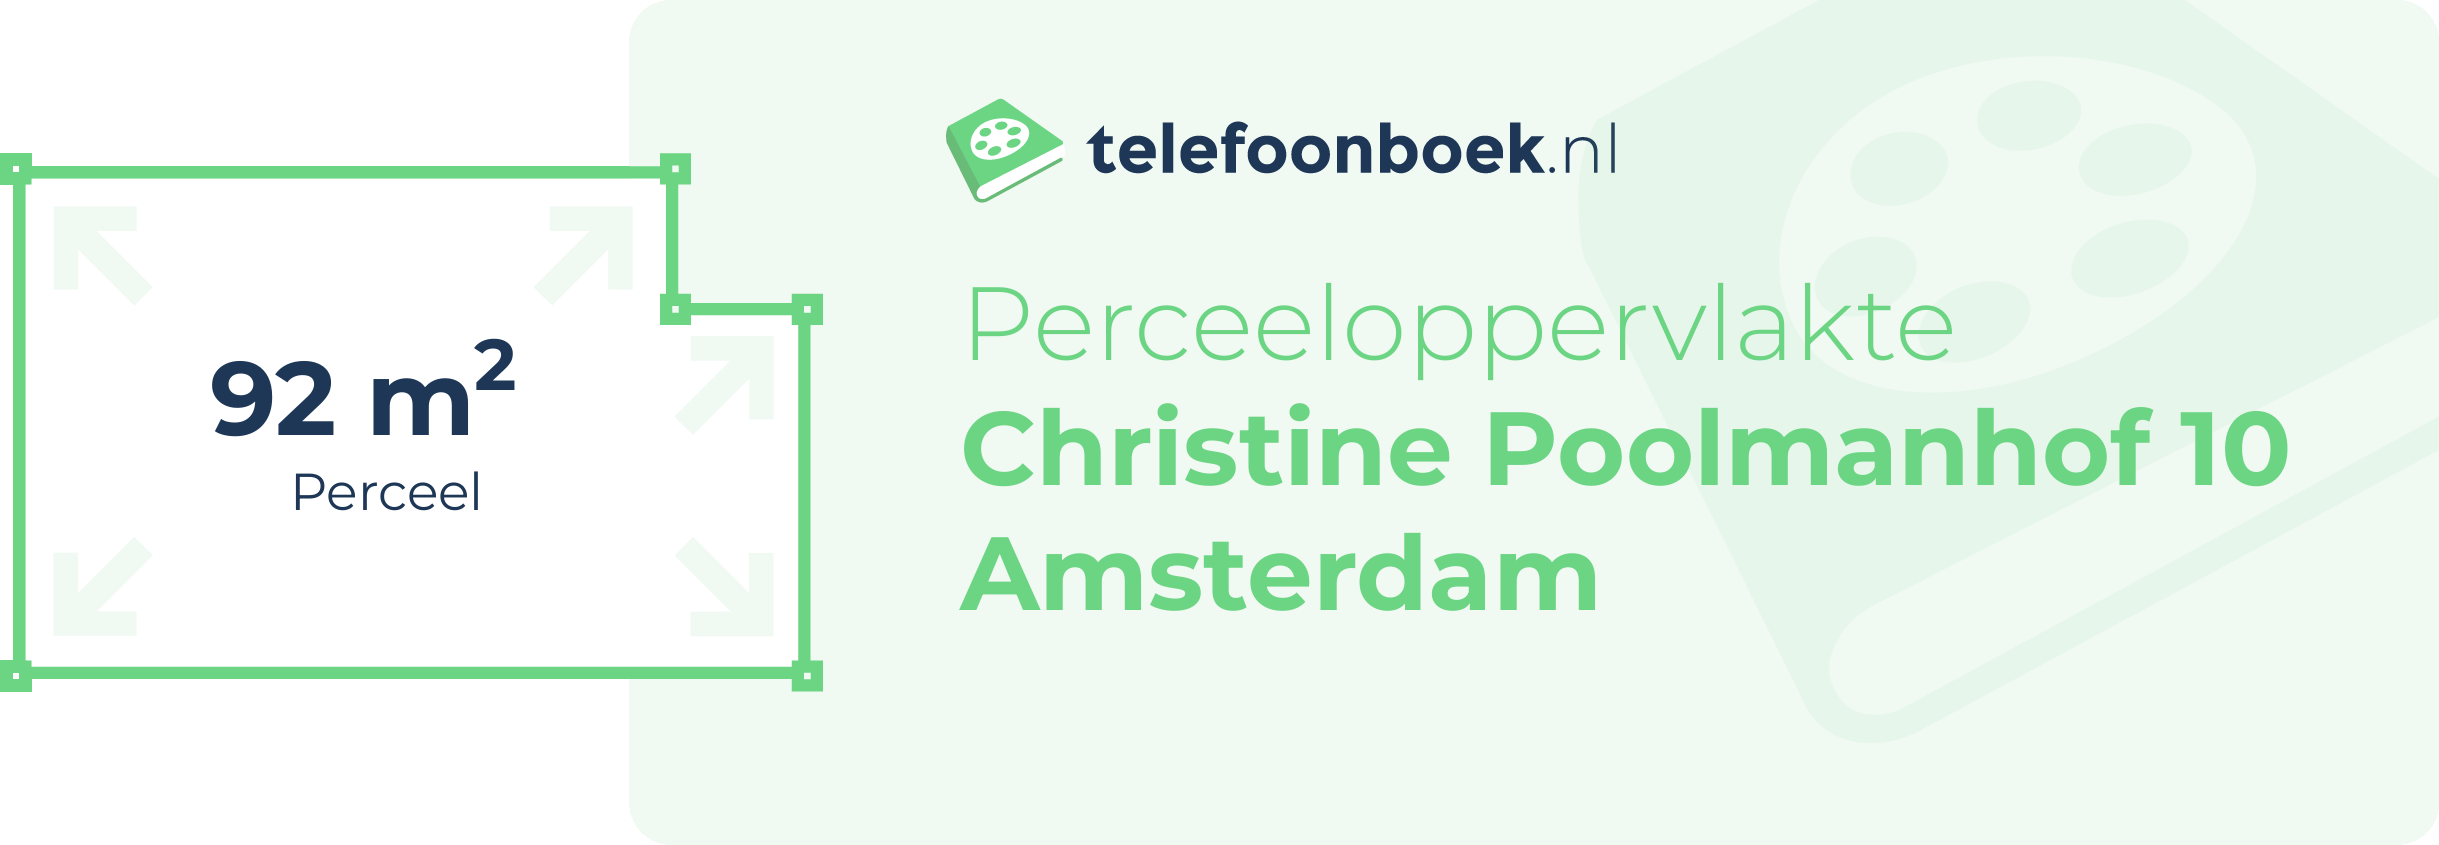 Perceeloppervlakte Christine Poolmanhof 10 Amsterdam